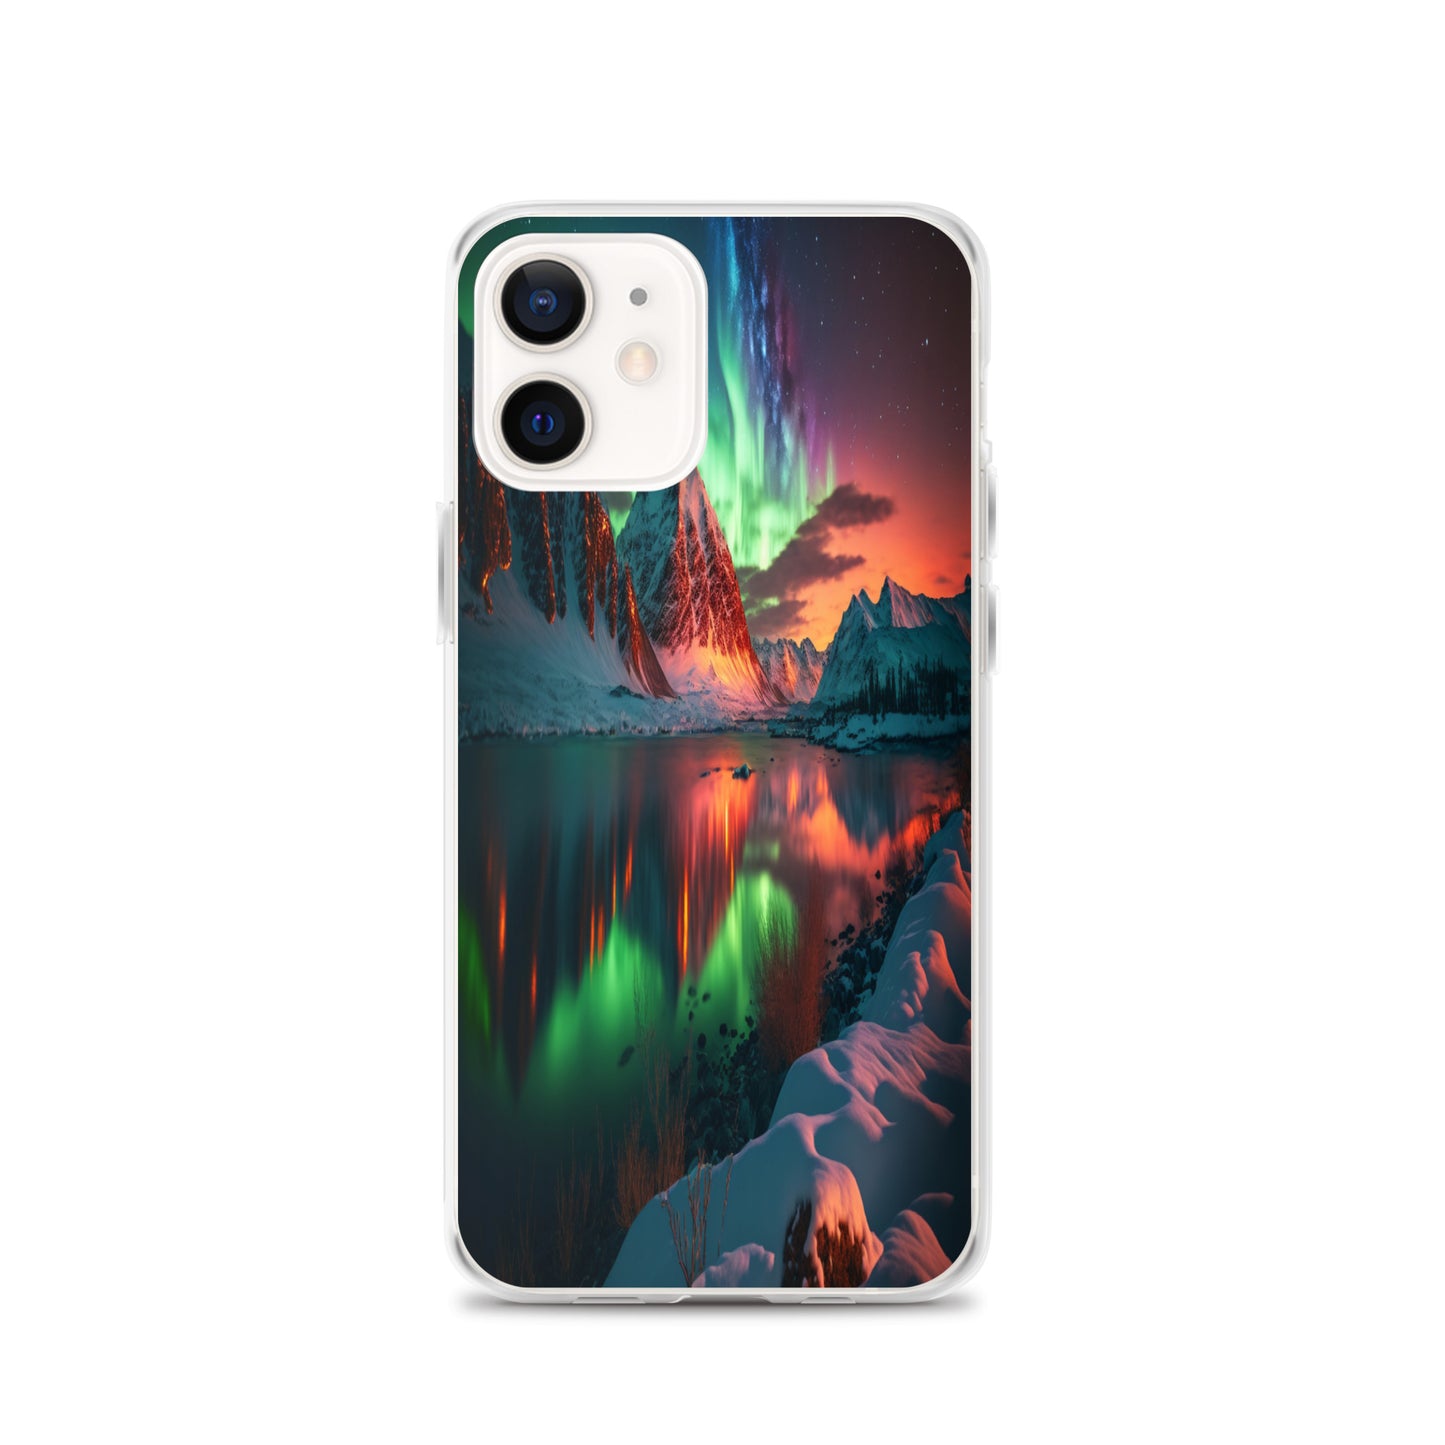 Unique Aurora Borealis iPhone Cover Case - Northern Light Phone Cover Case - Clear Case for iPhone - Perfect Aurora Lovers Gift 9